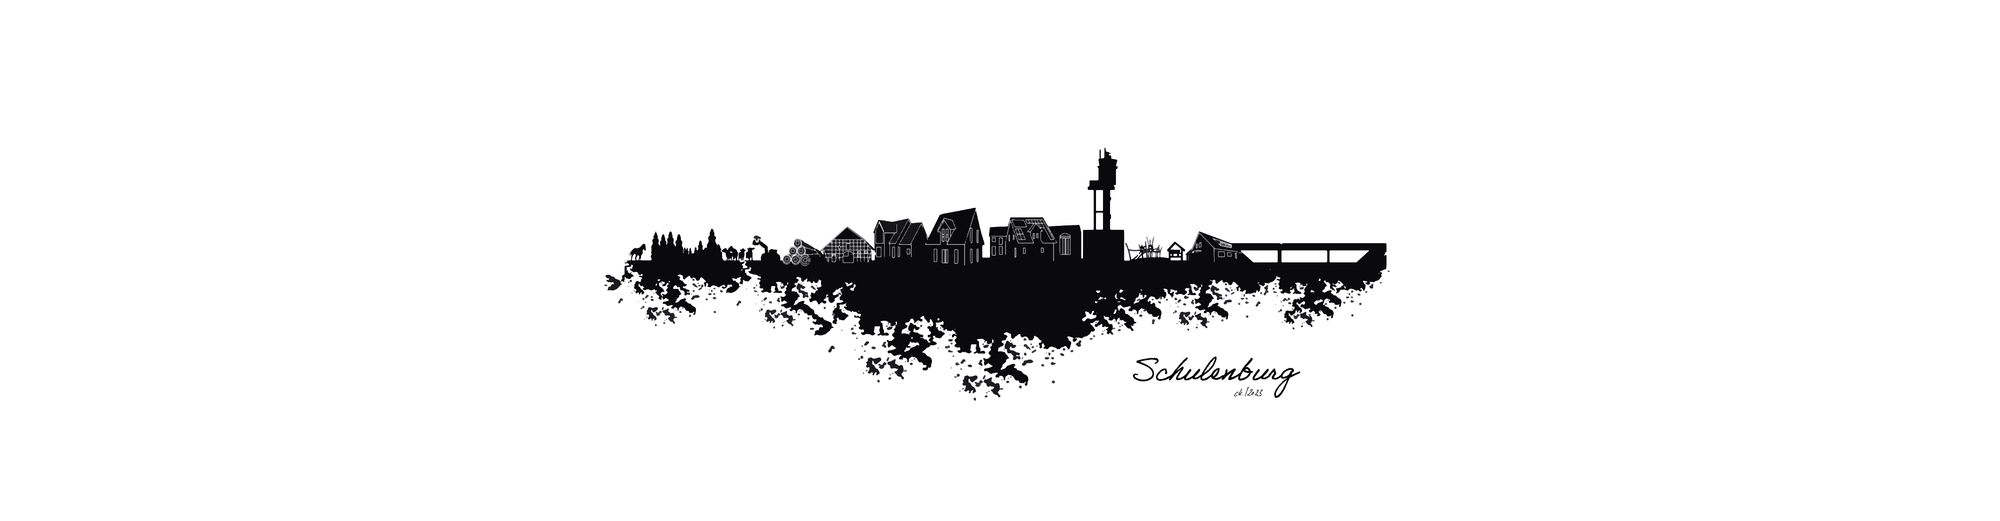 Dorfposter: Skyline Schulenburg Banner